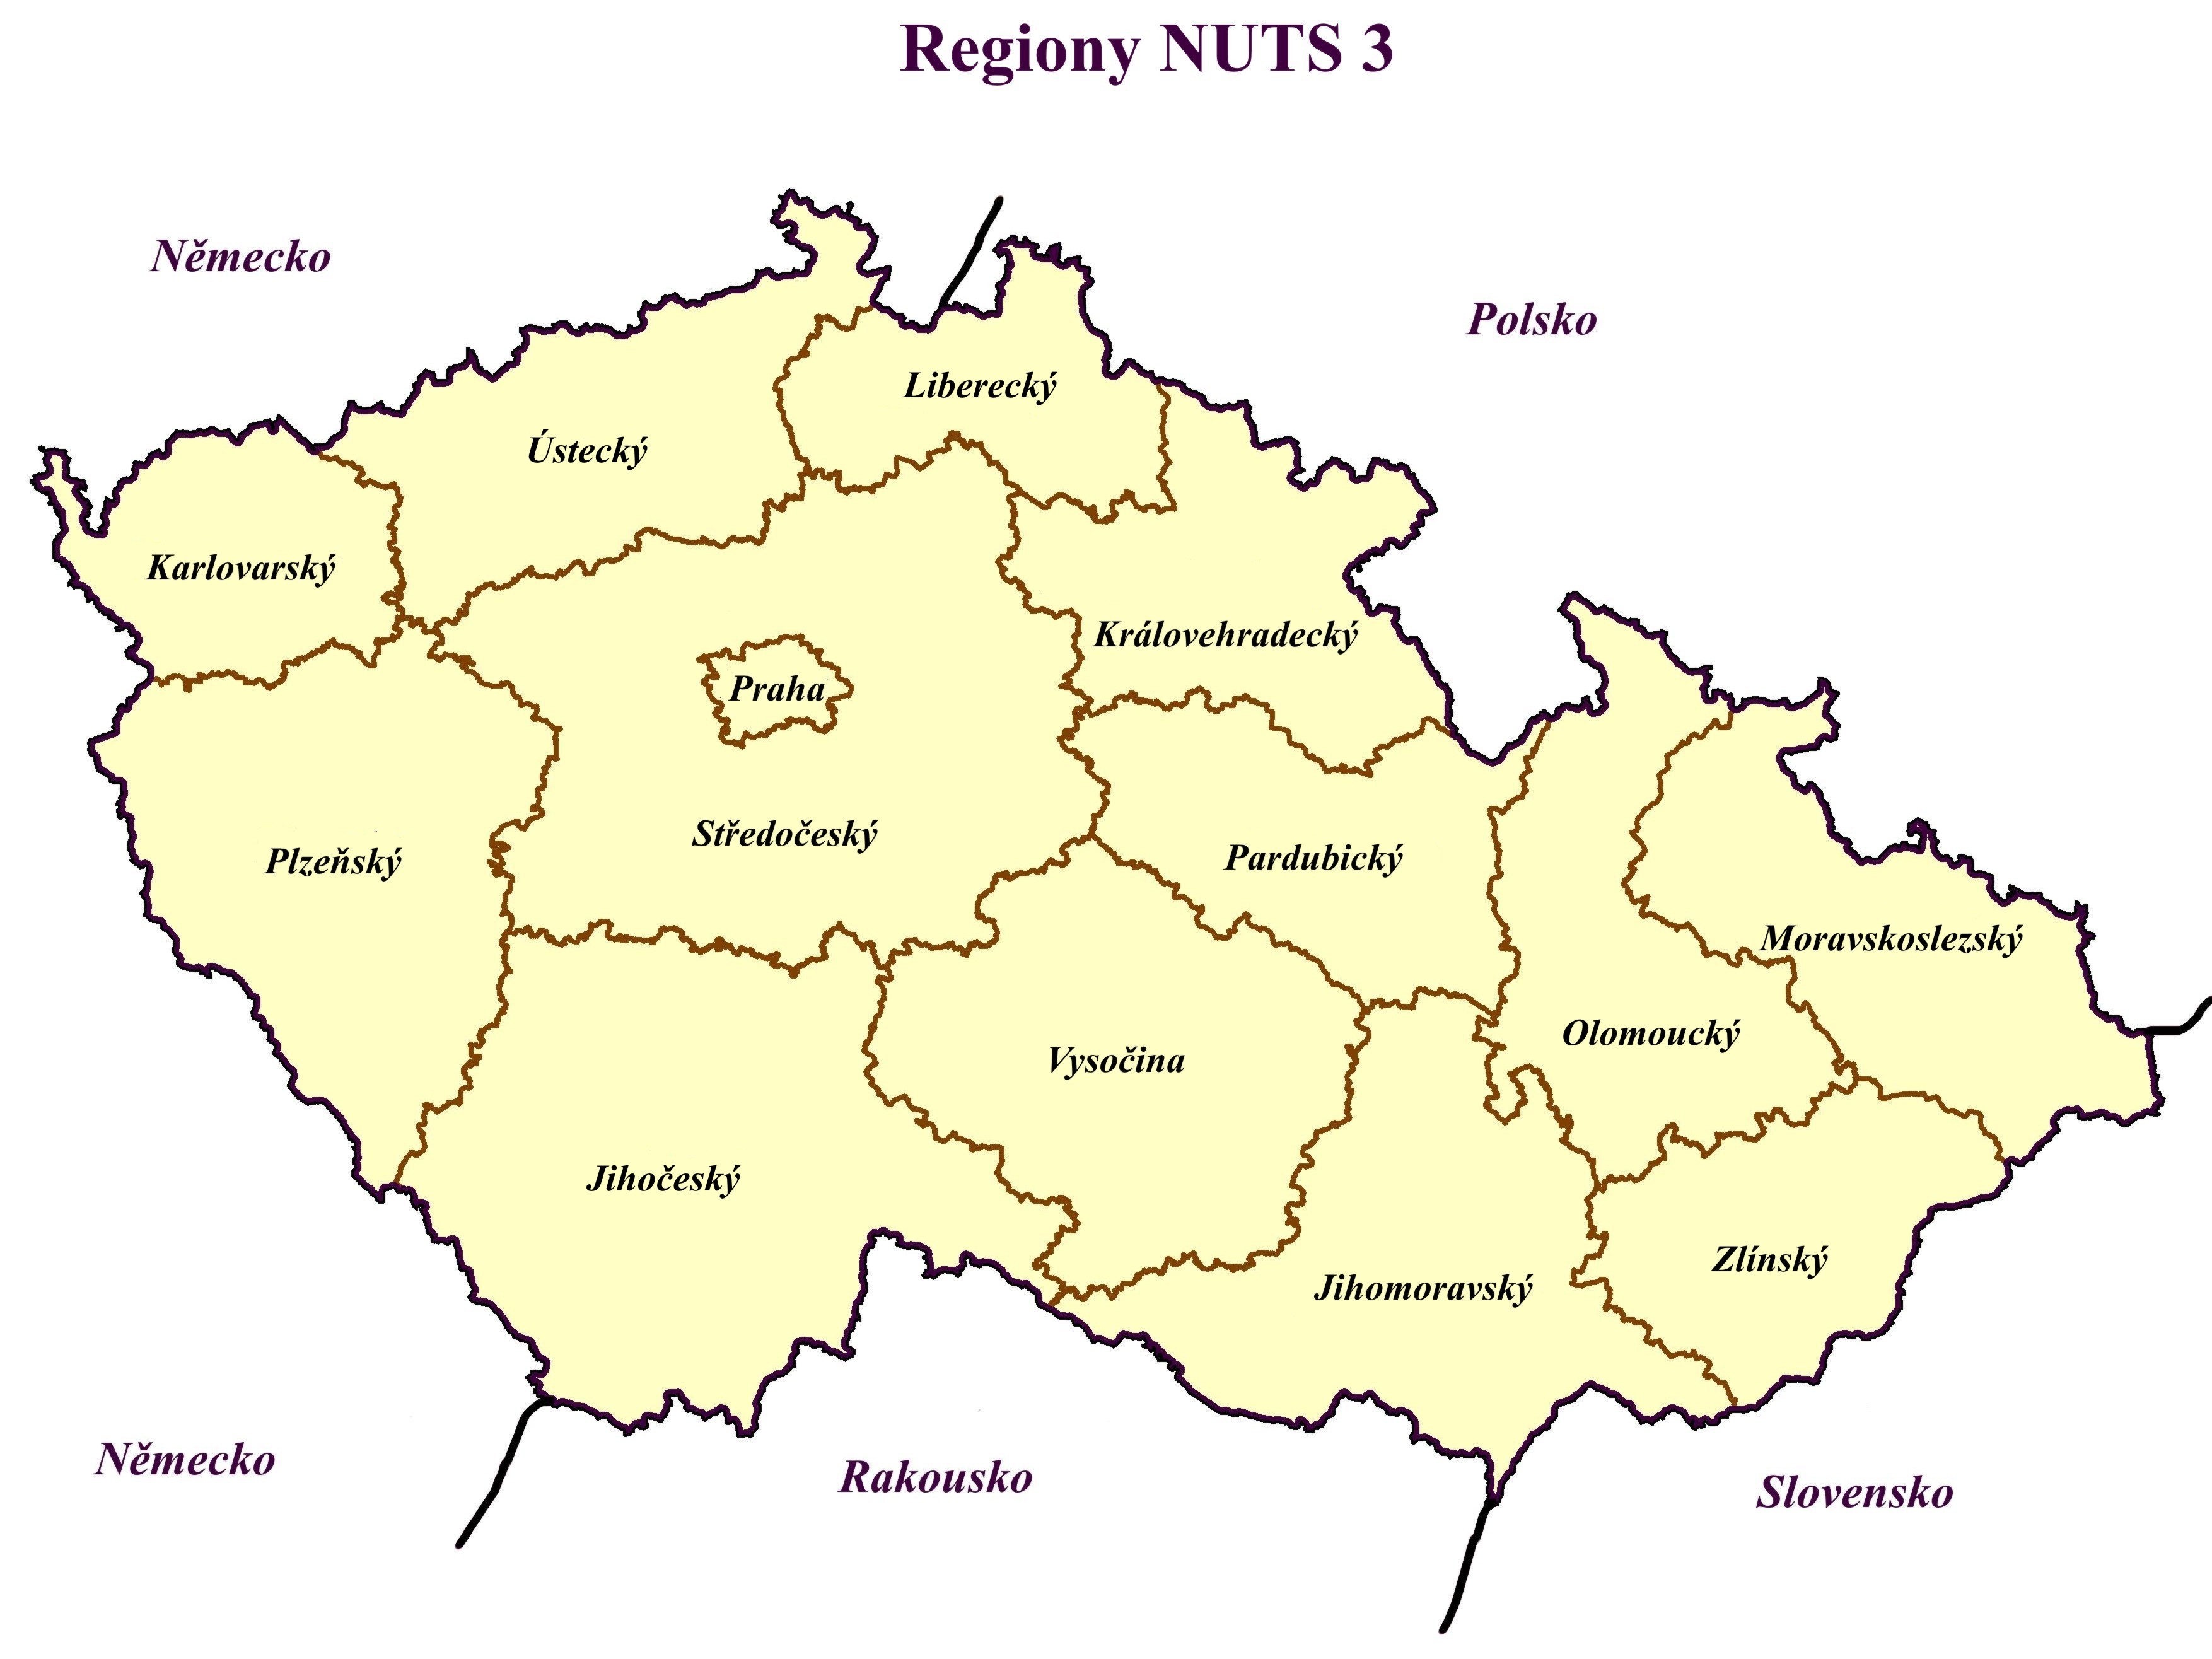 9.5. Regiony NUTS 3